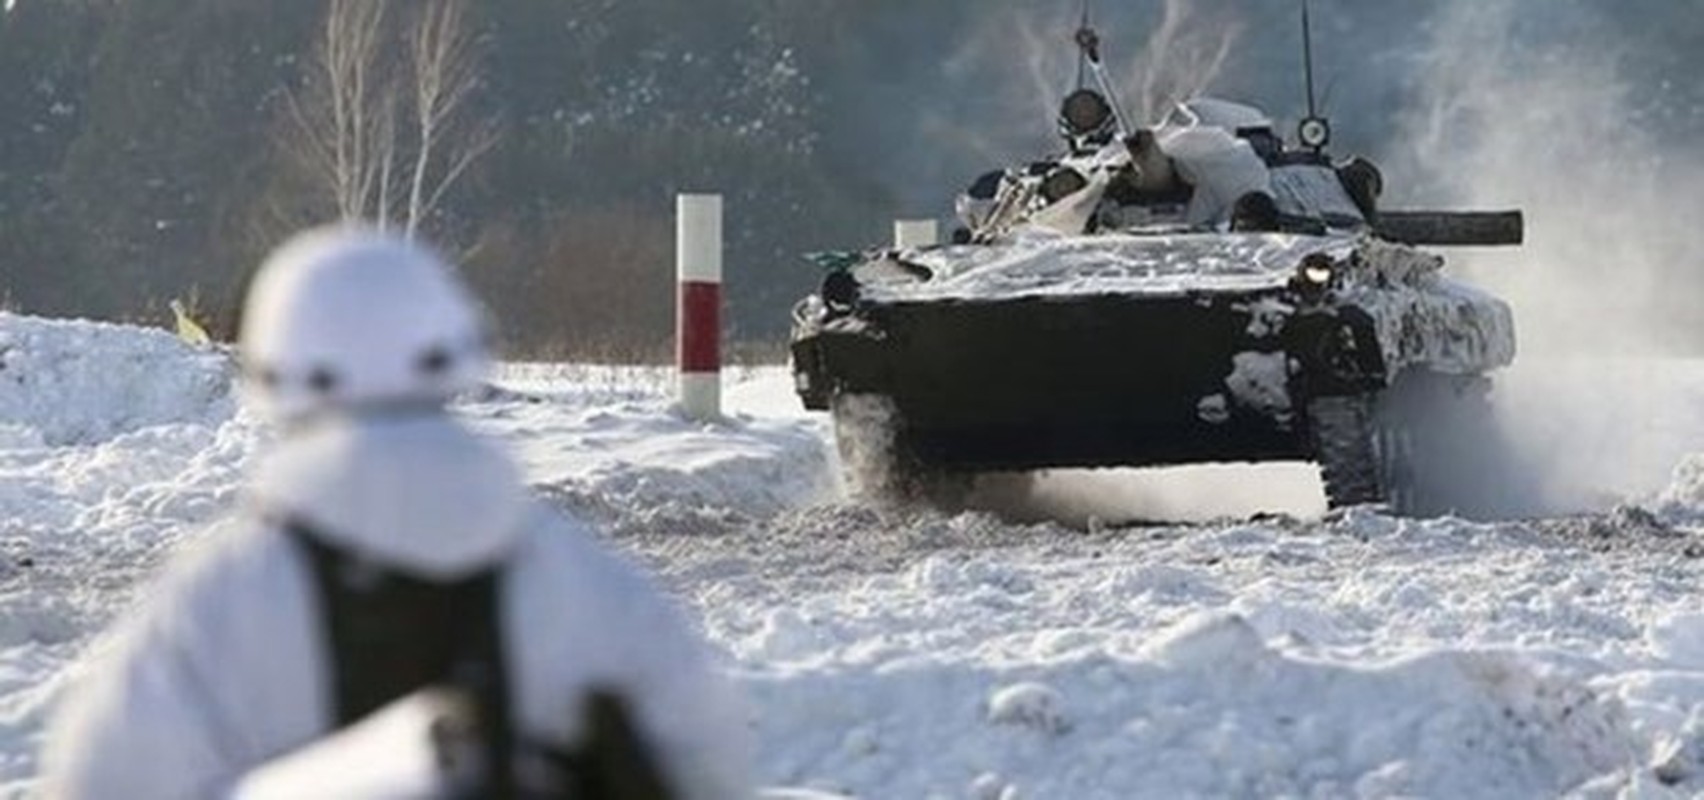 Nong: Quan doi Nga dan tran quanh Donbass, san sang dong binh-Hinh-2